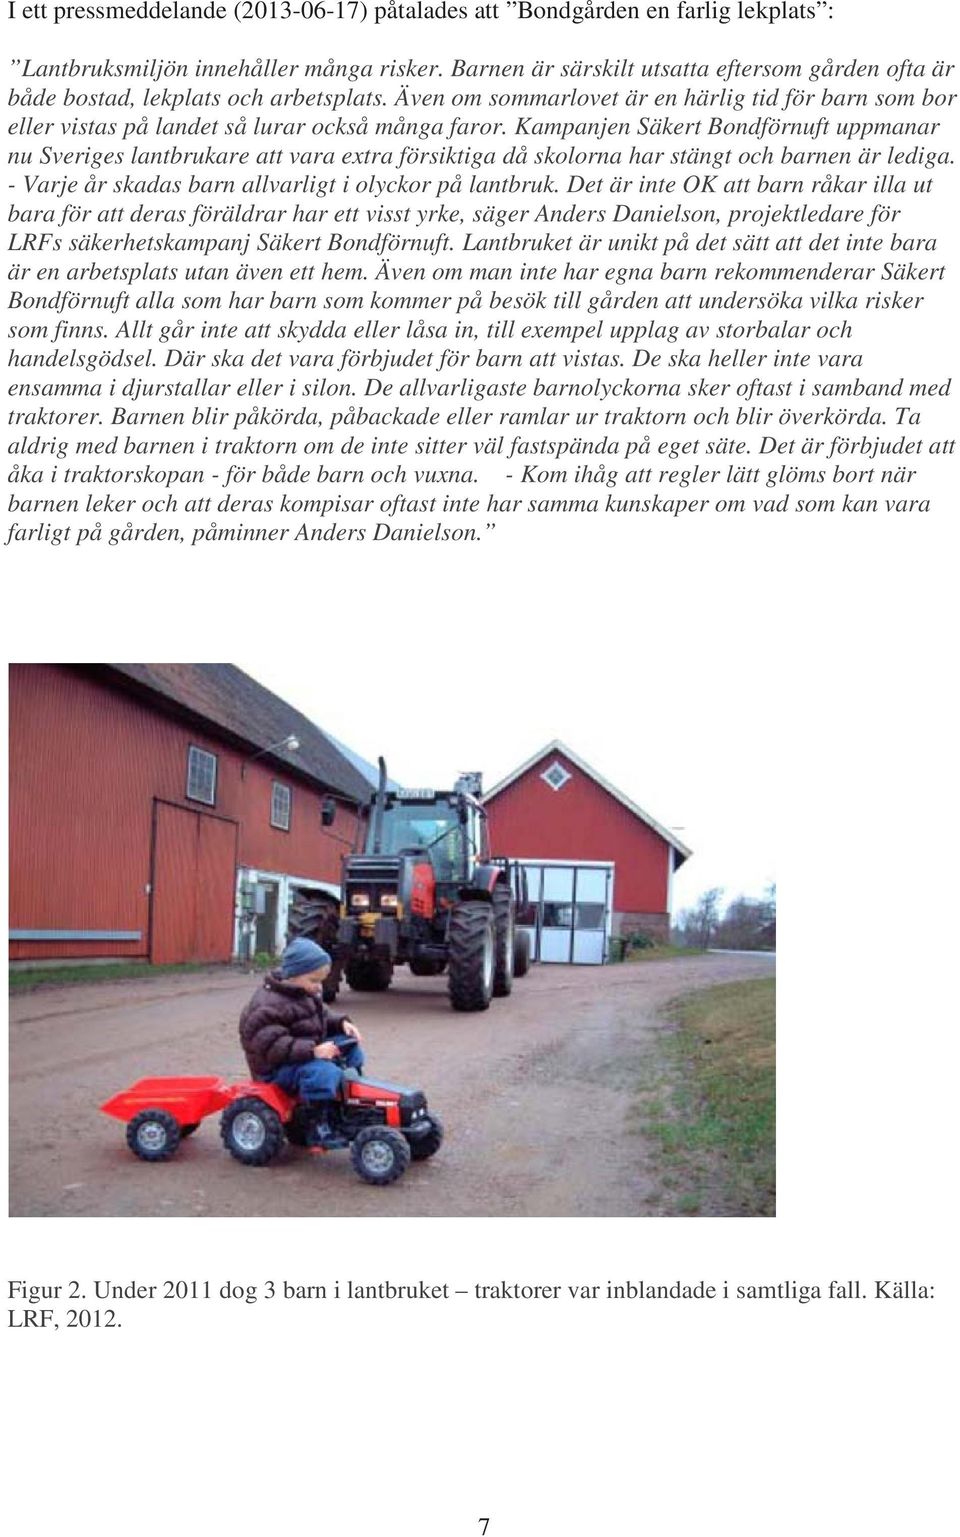 Kampanjen Säkert Bondförnuft uppmanar nu Sveriges lantbrukare att vara extra försiktiga då skolorna har stängt och barnen är lediga. - Varje år skadas barn allvarligt i olyckor på lantbruk.